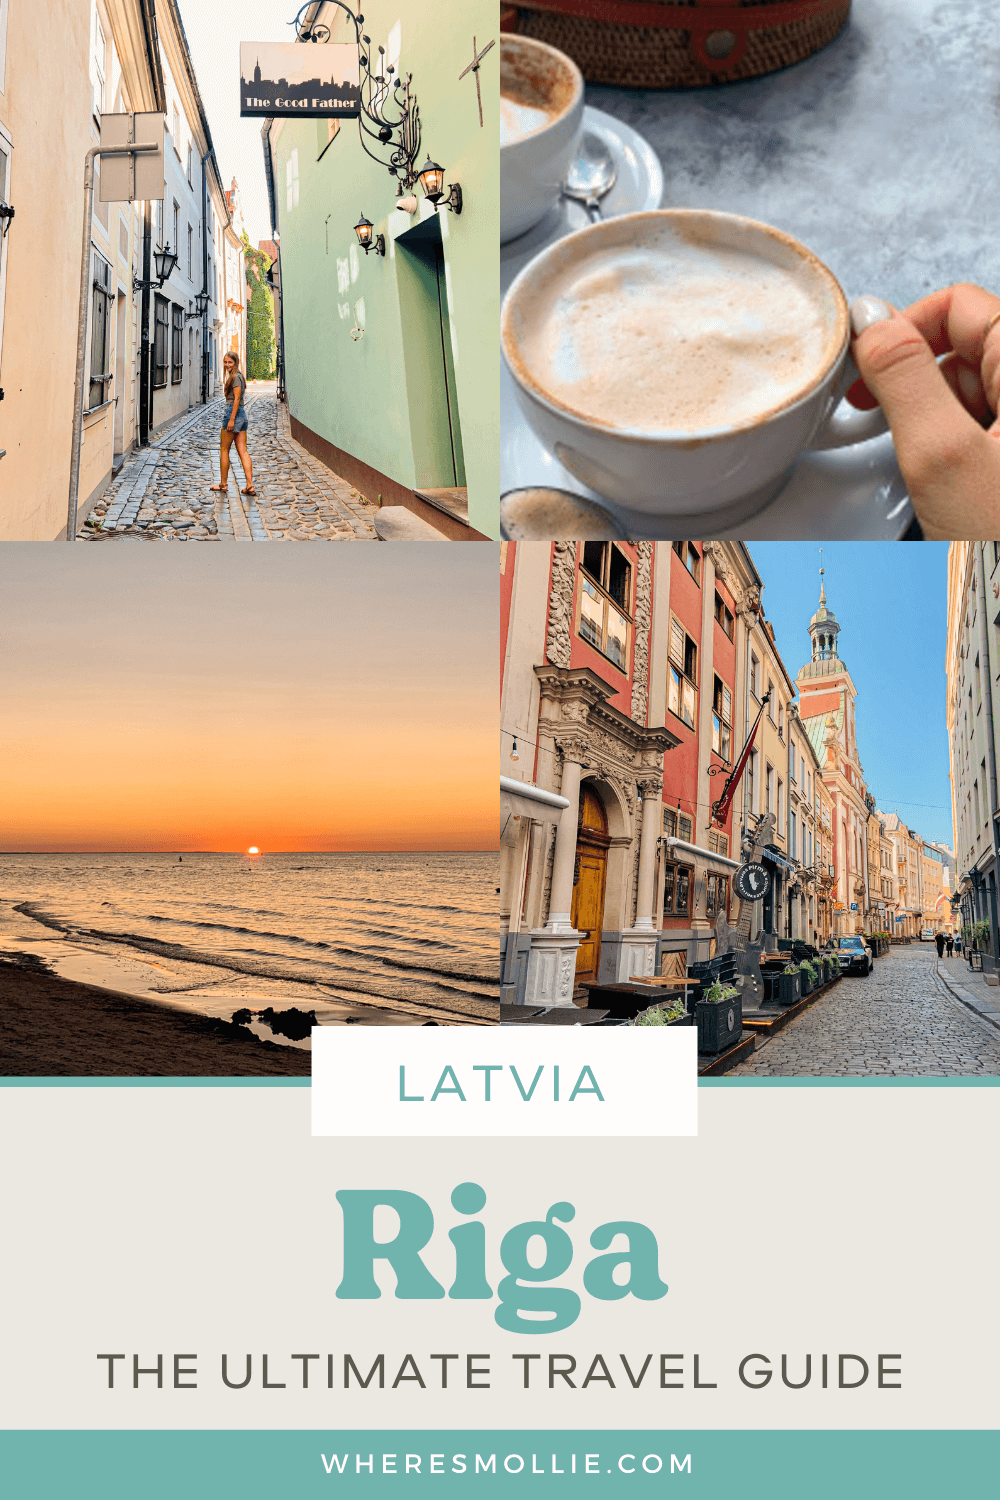 A travel guide for Riga, Latvia